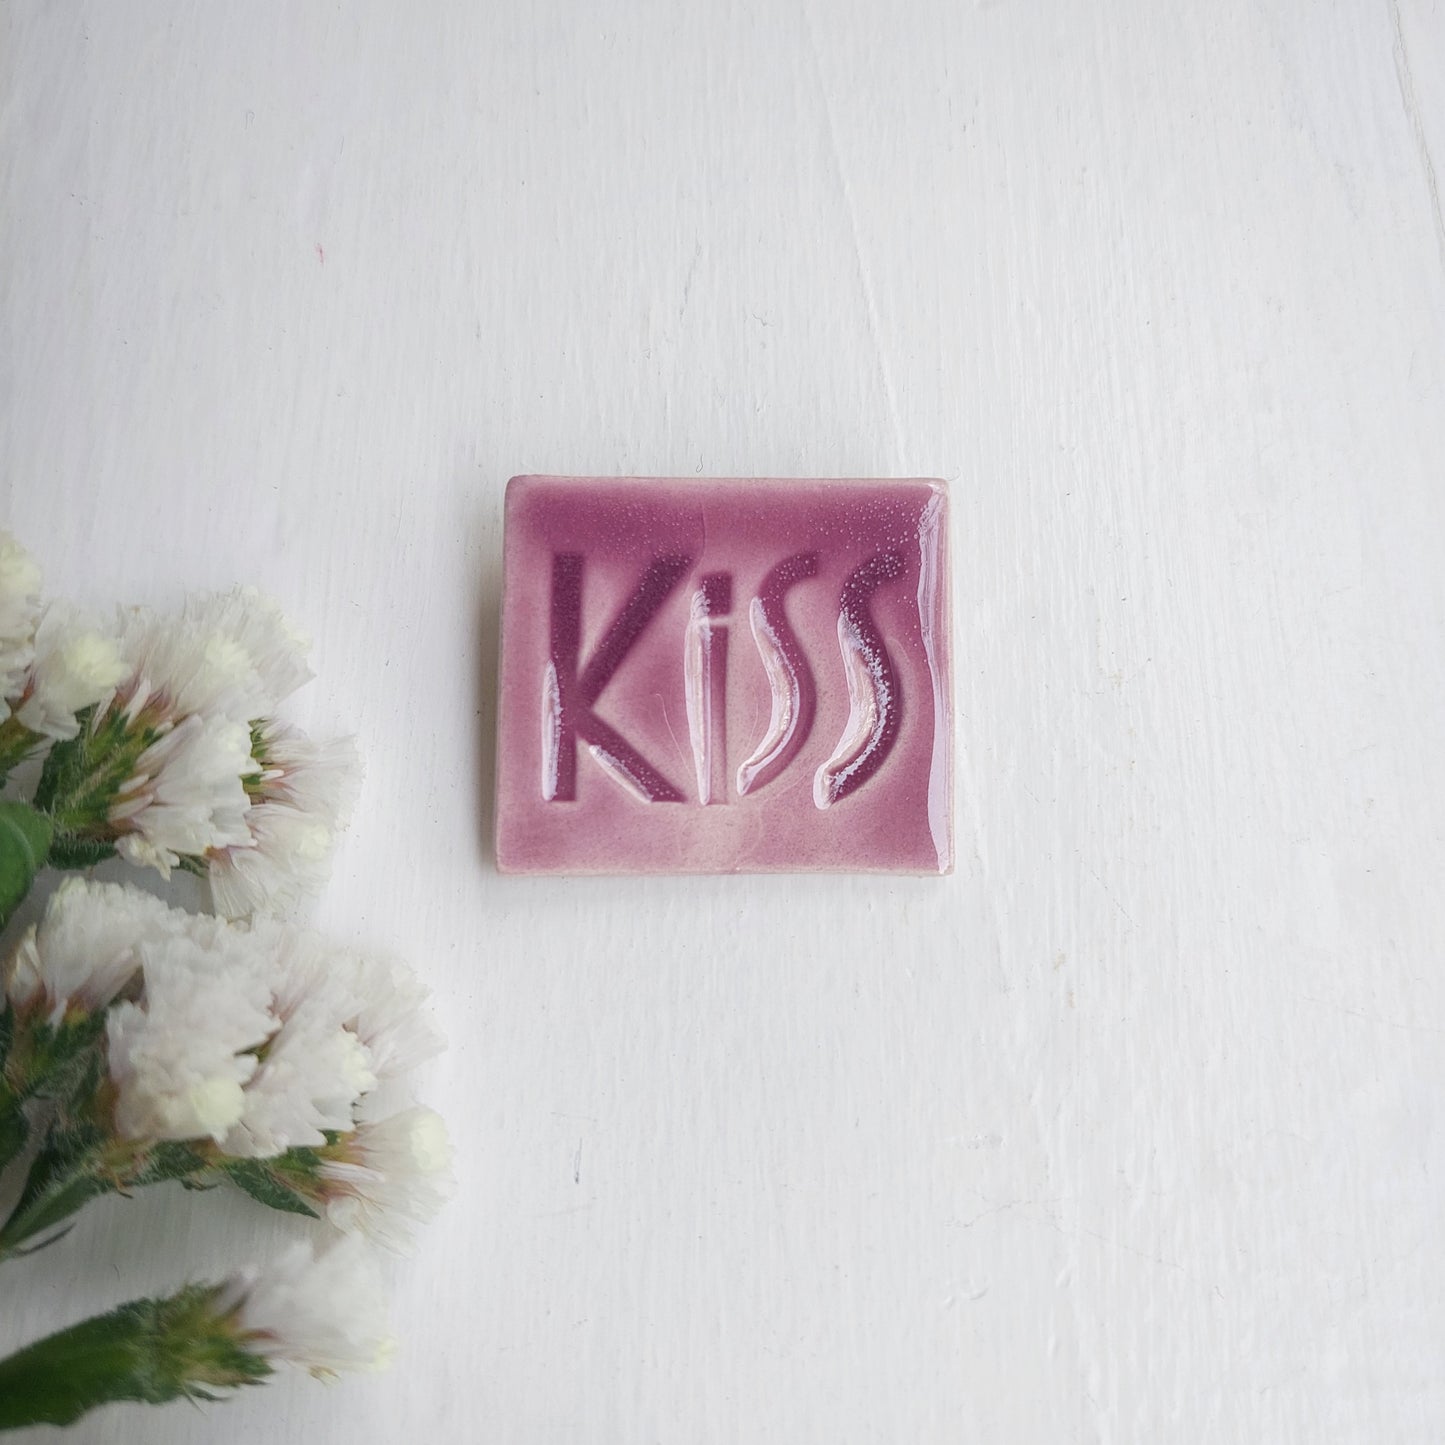 Spilla in ceramica lilla con scritta Kiss